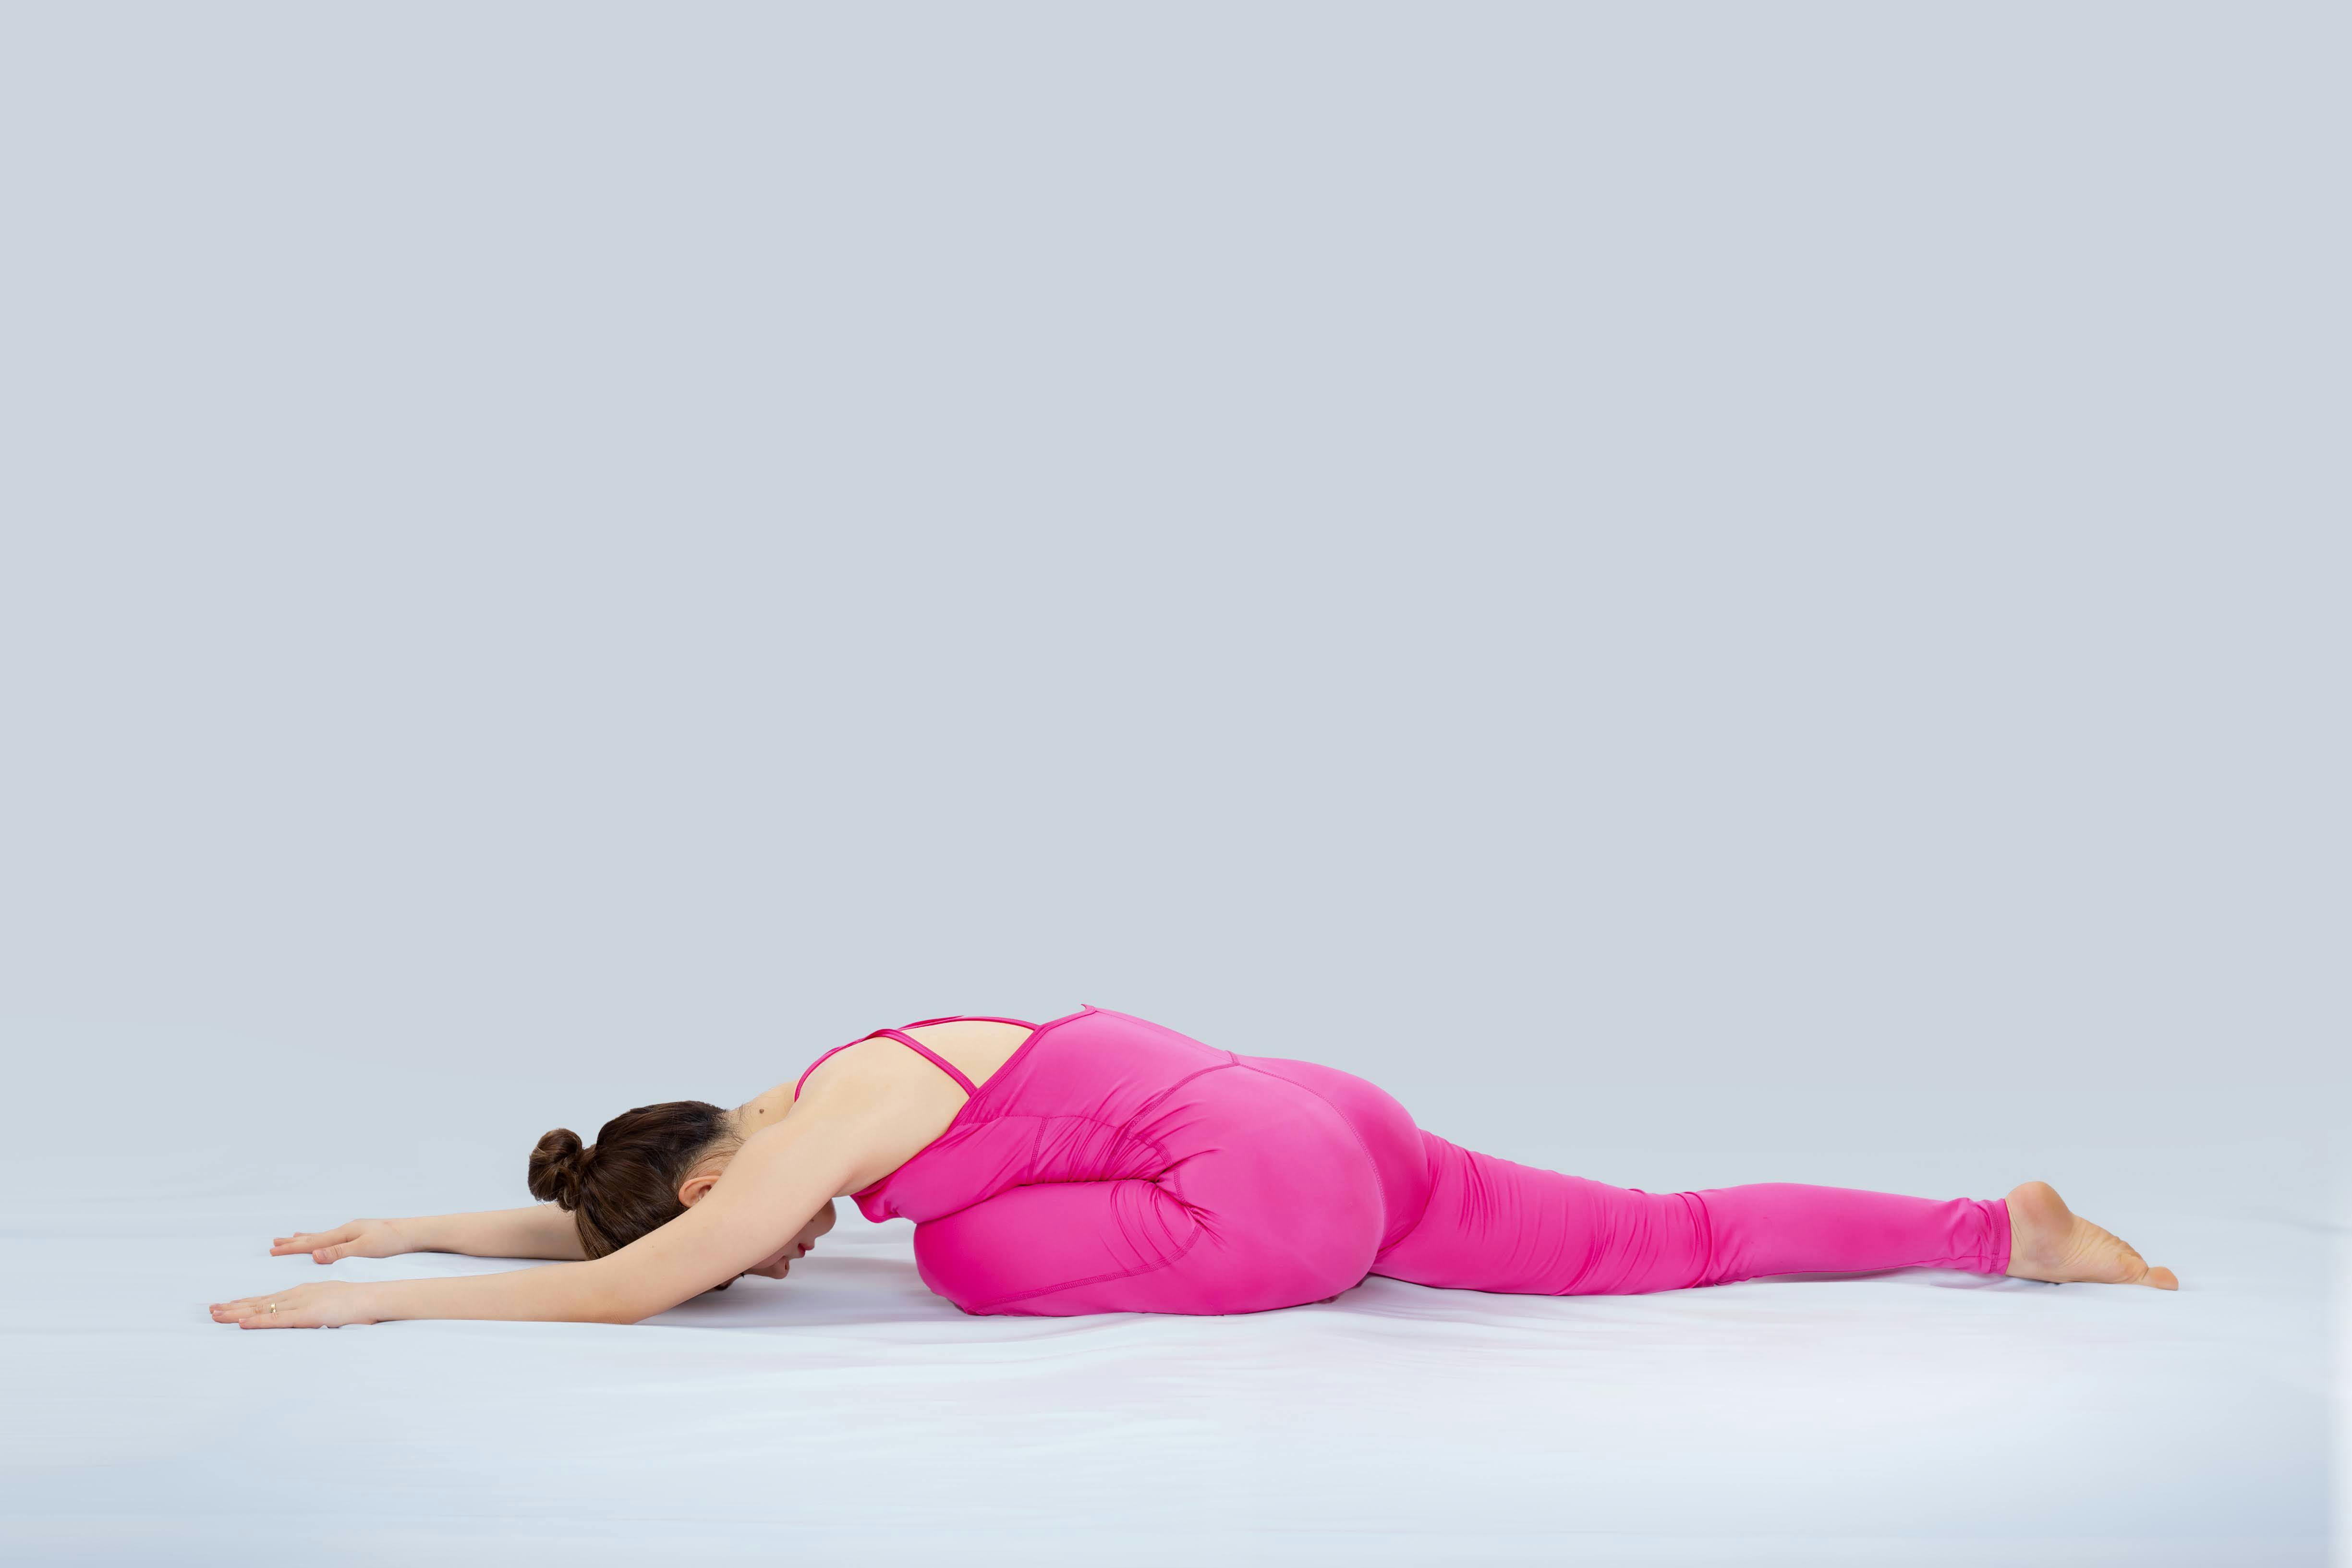 Women Stretching Images - Free Download on Freepik